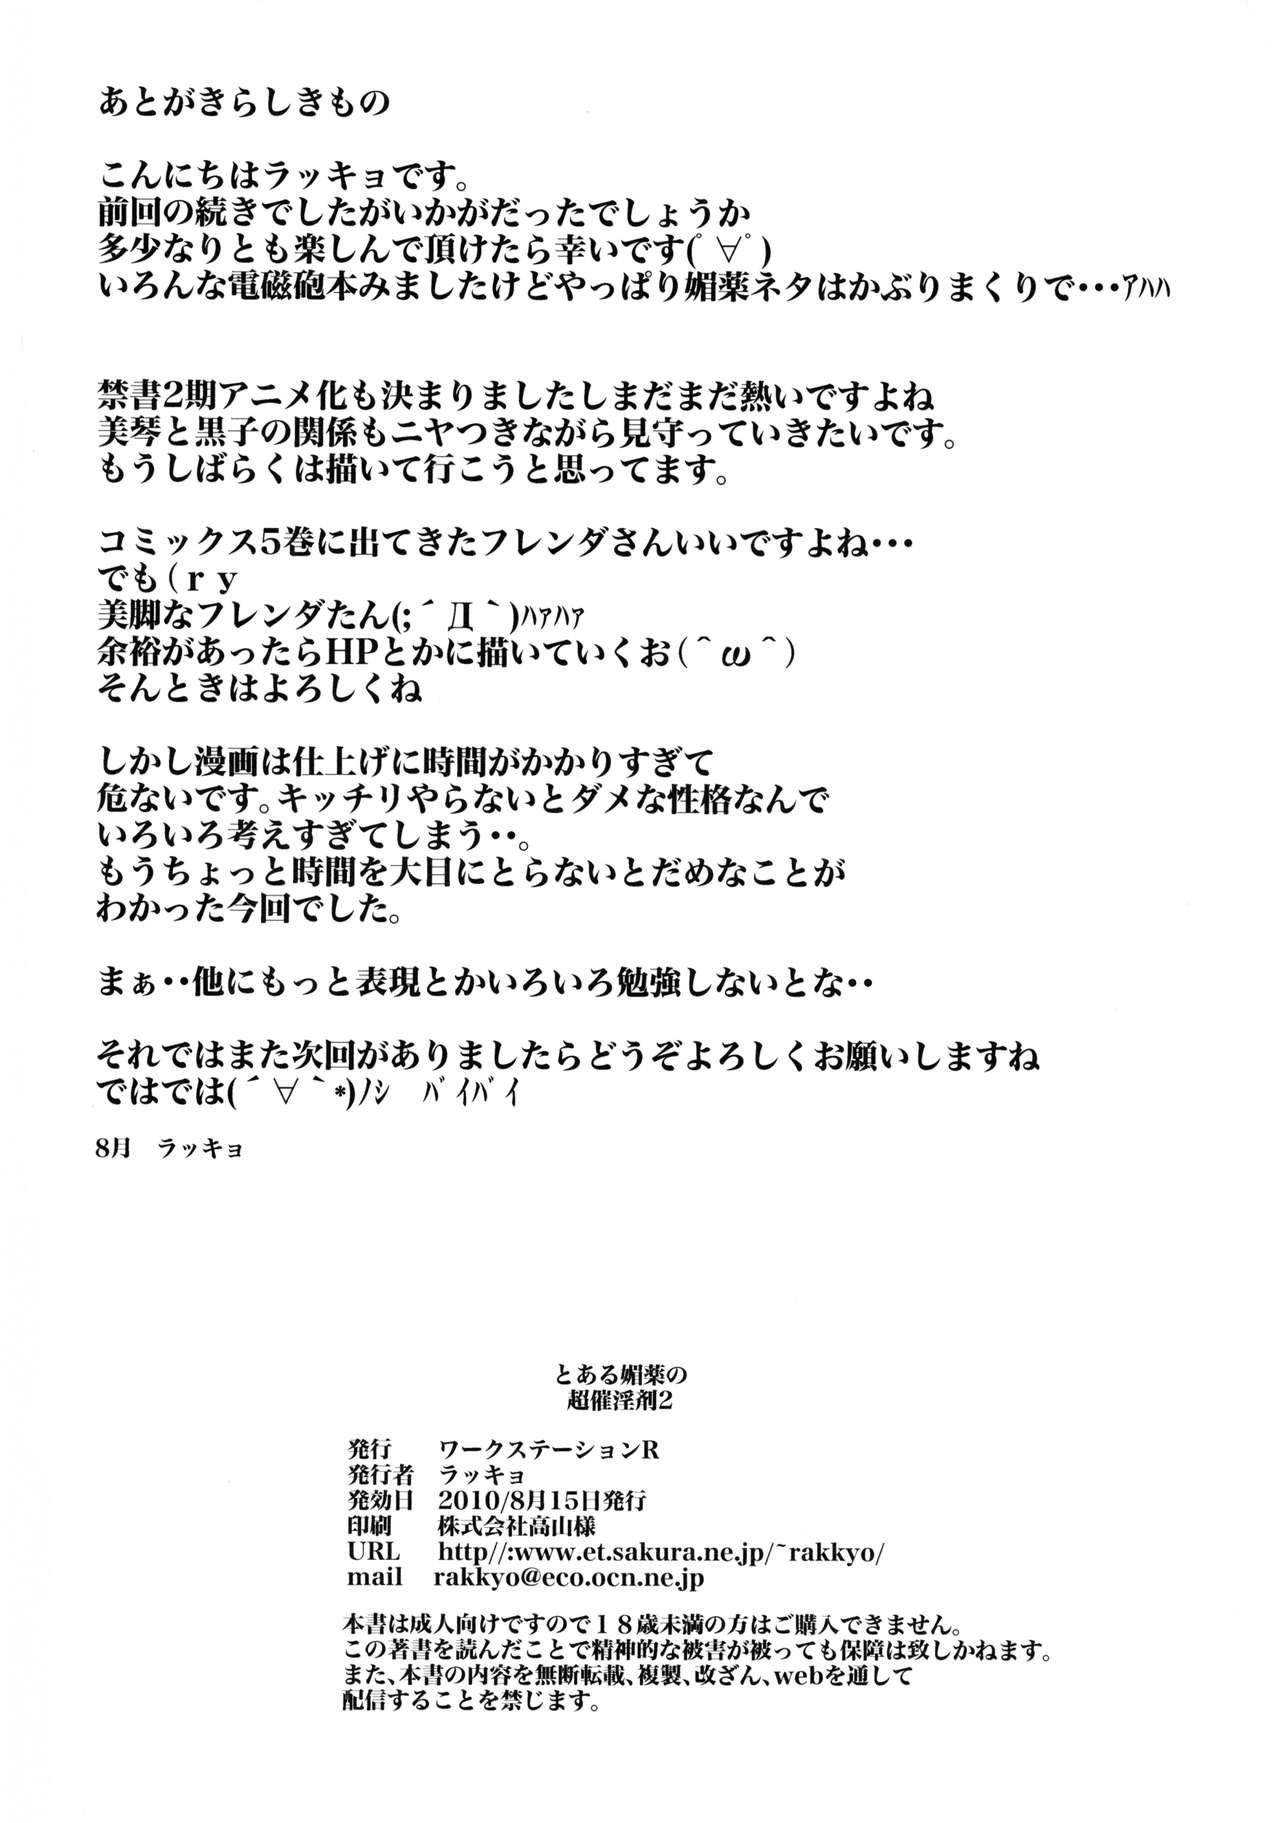 Stripping Toaru Biyaku no Chou Saiinzai 2 - Toaru majutsu no index | a certain magical index Wives - Page 26